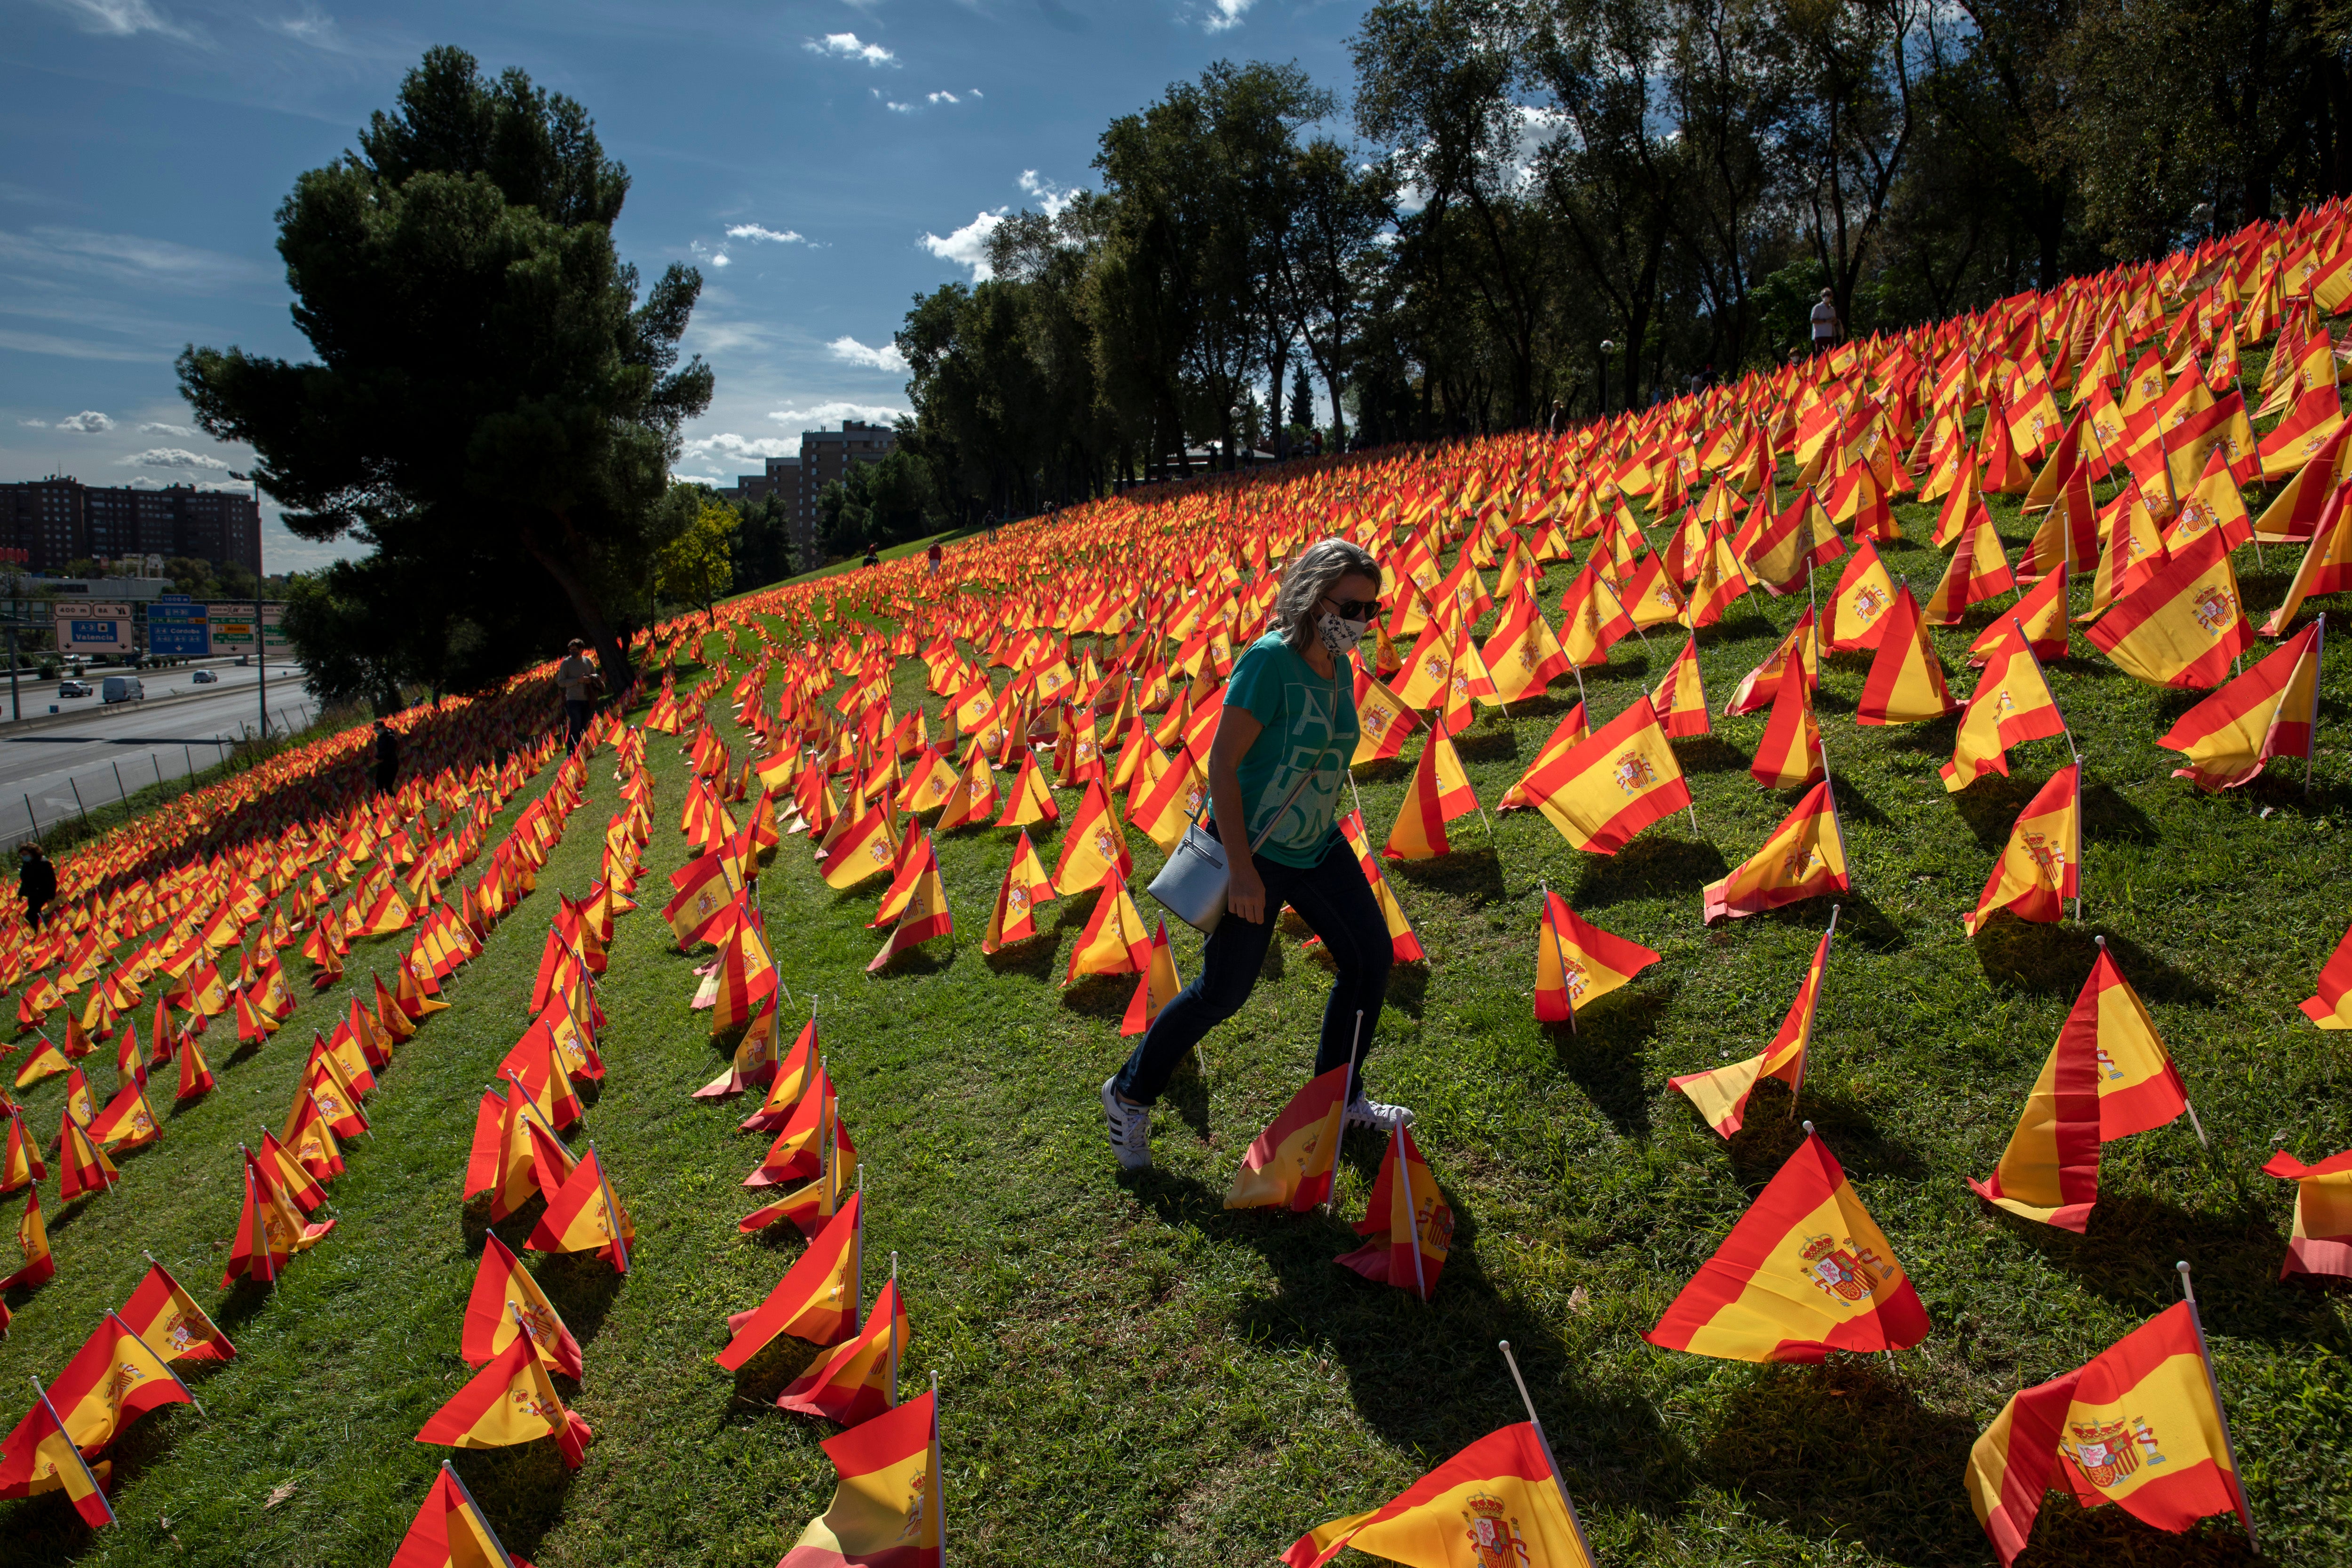 53,000 banderas adornan un parque en Madrid, en honor a los fallecidos por Coronavirus.